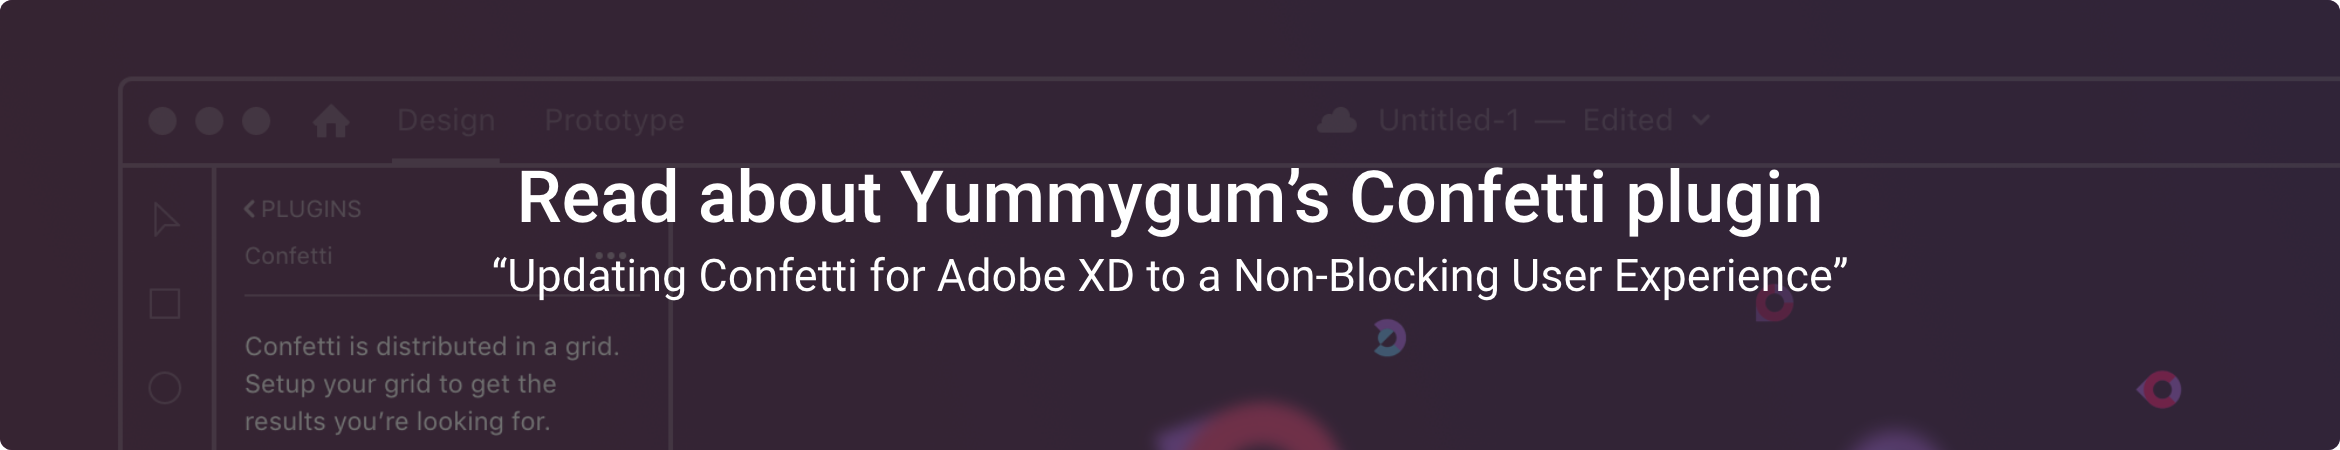 Read about Yummygum's Confetti plugin